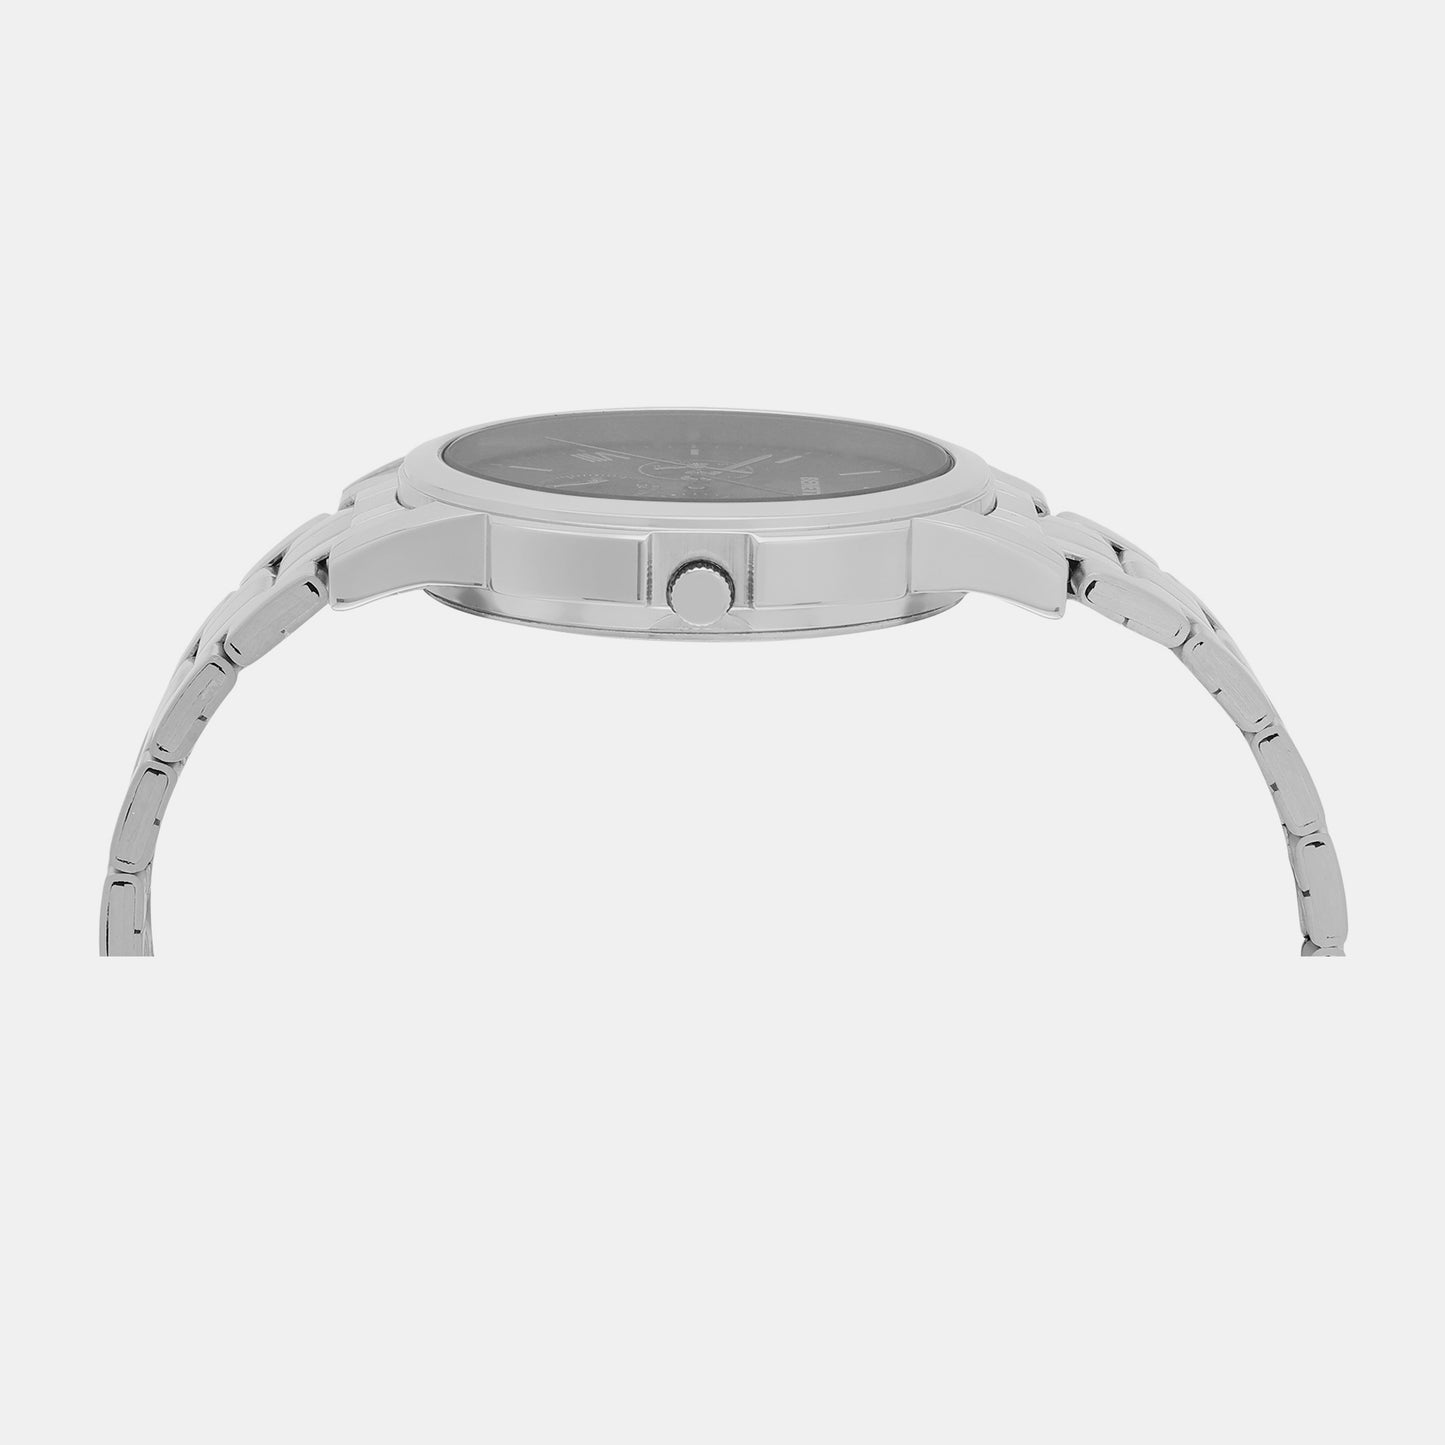 Iconic Grey Male Multifunction Analog Stainless Steel Watch UWUCG0804